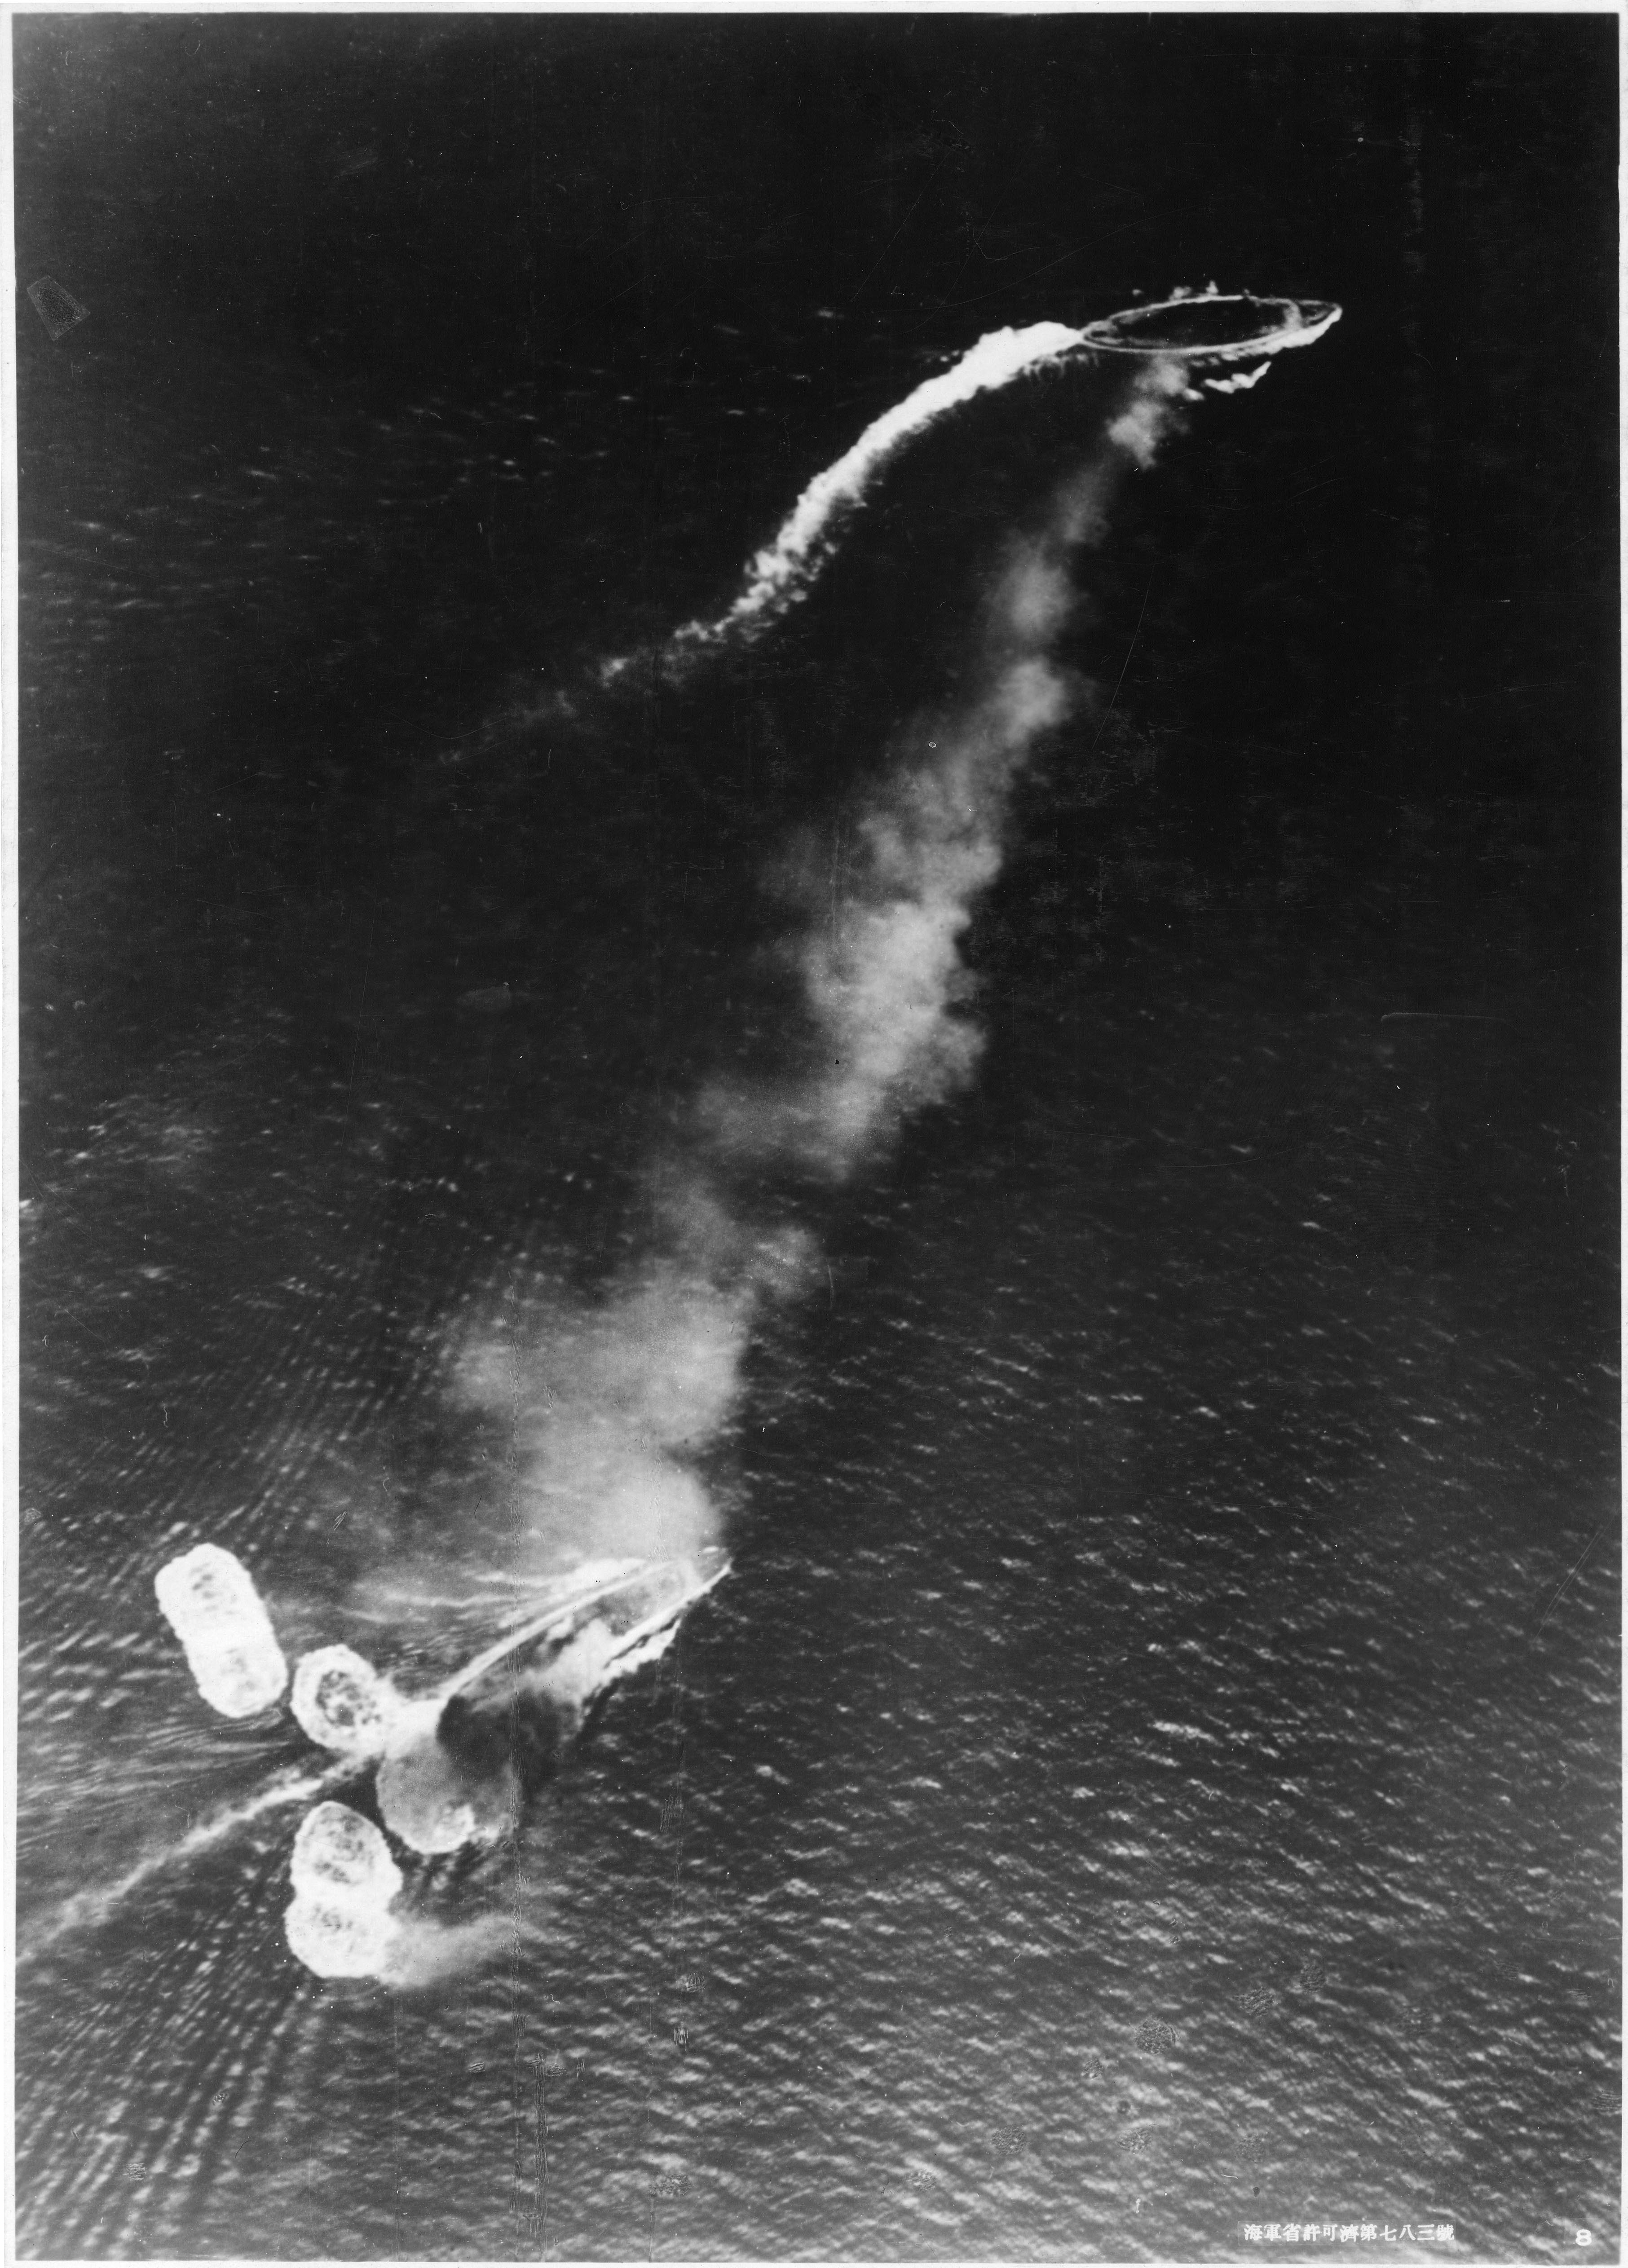 マレー沖海戦 - Wikipedia